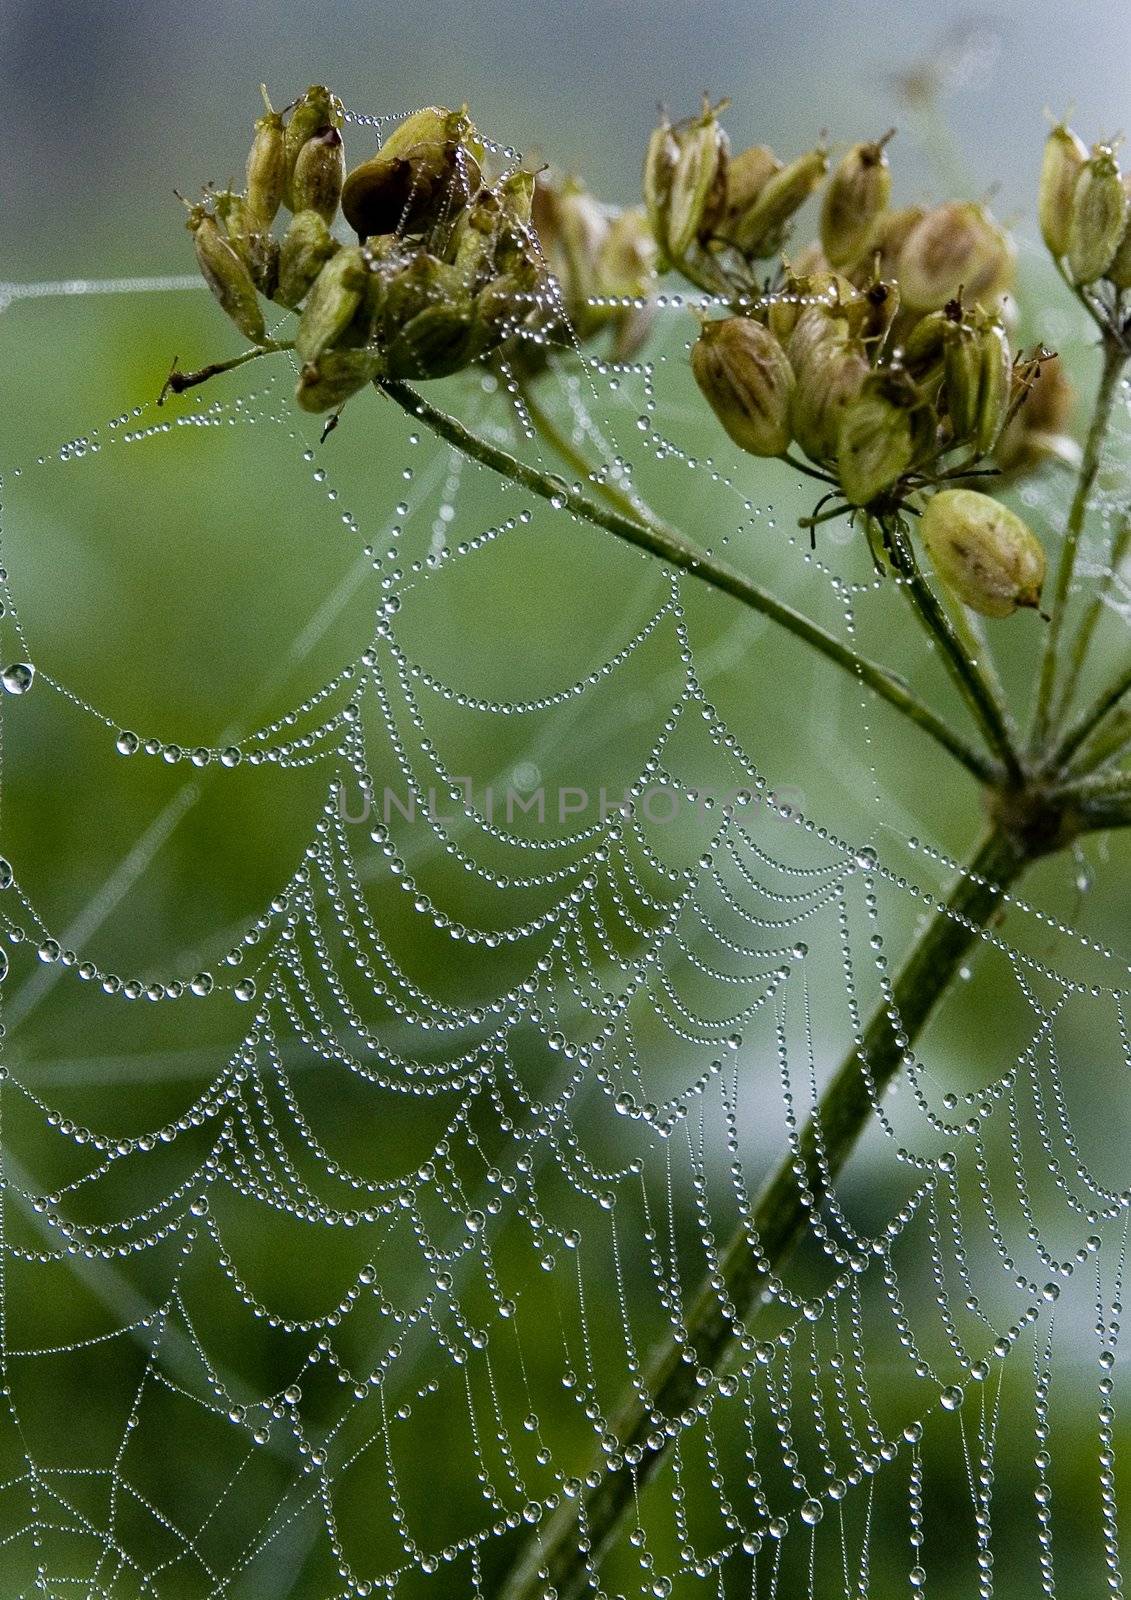 Beautiful spider web by shiffti